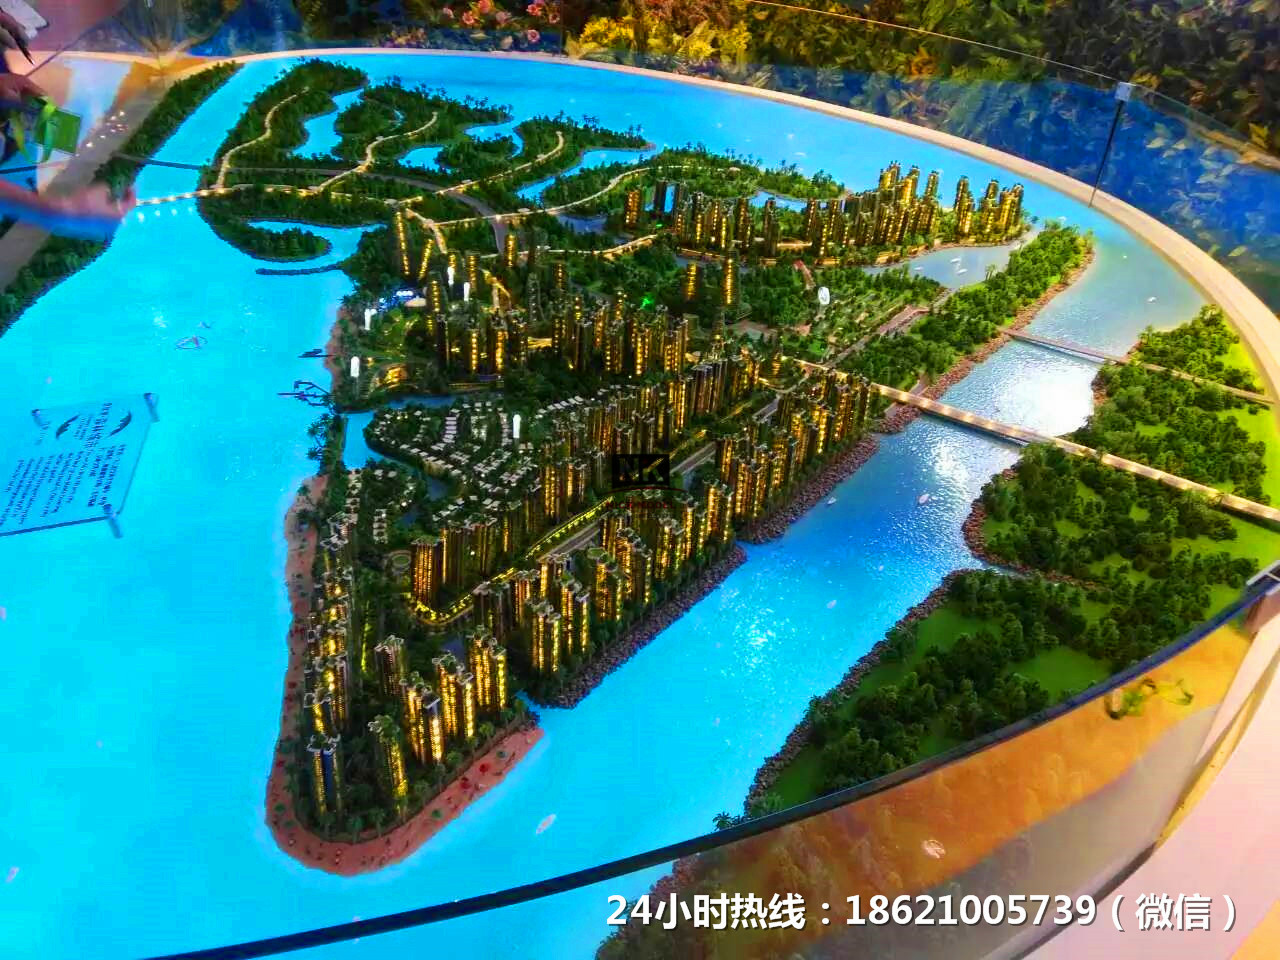 上海建筑模型公司,上海建筑模型公司价格,上海建筑模型公司哪家好,上海模型公司